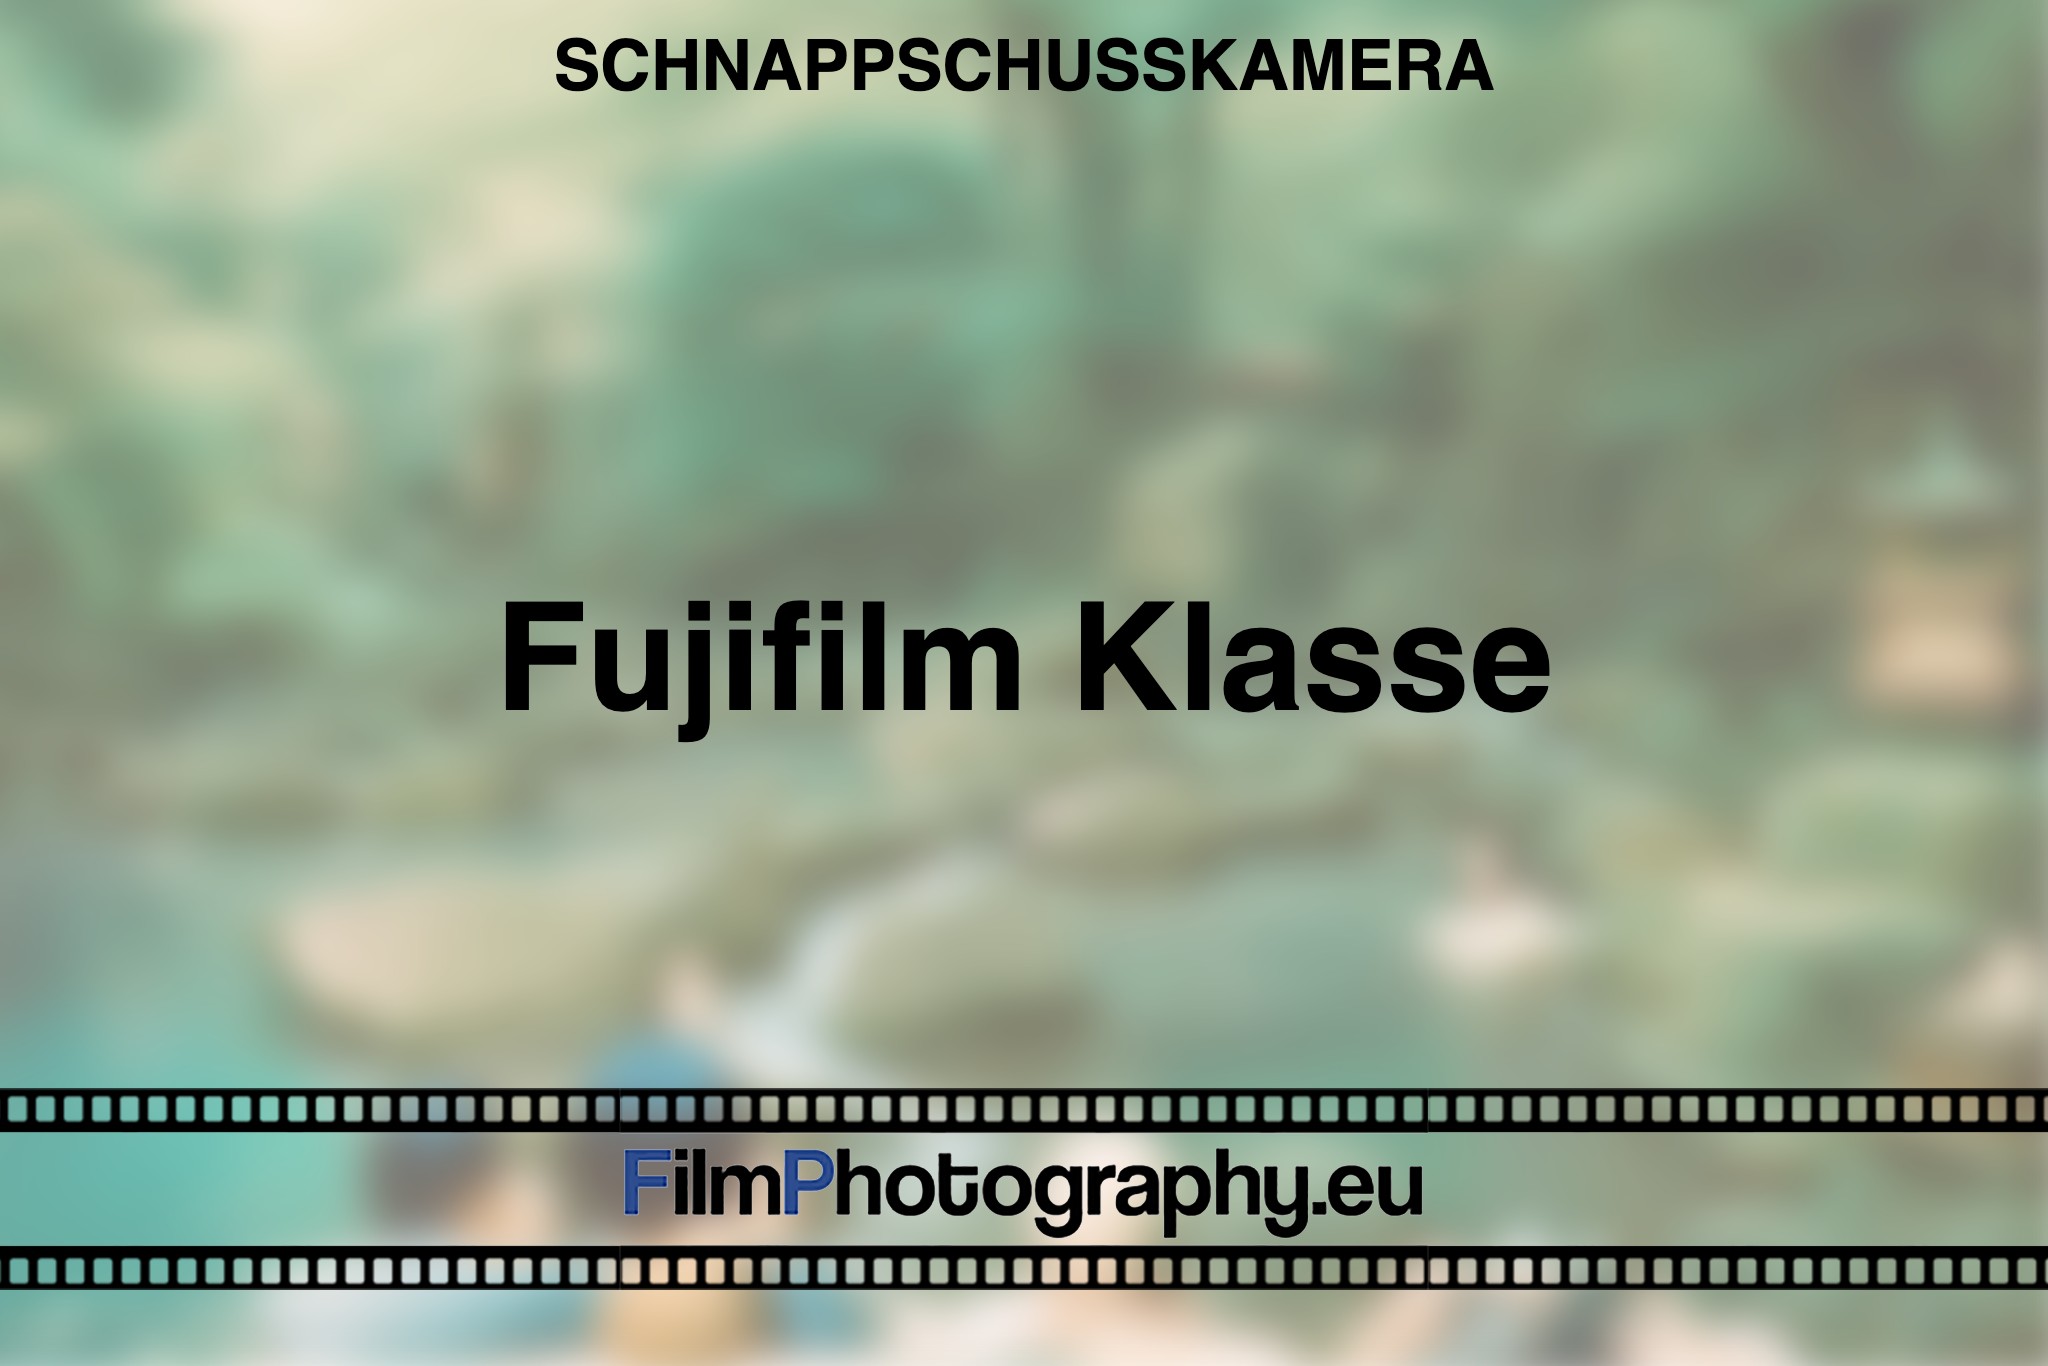 fujifilm-klasse-schnappschusskamera-bnv